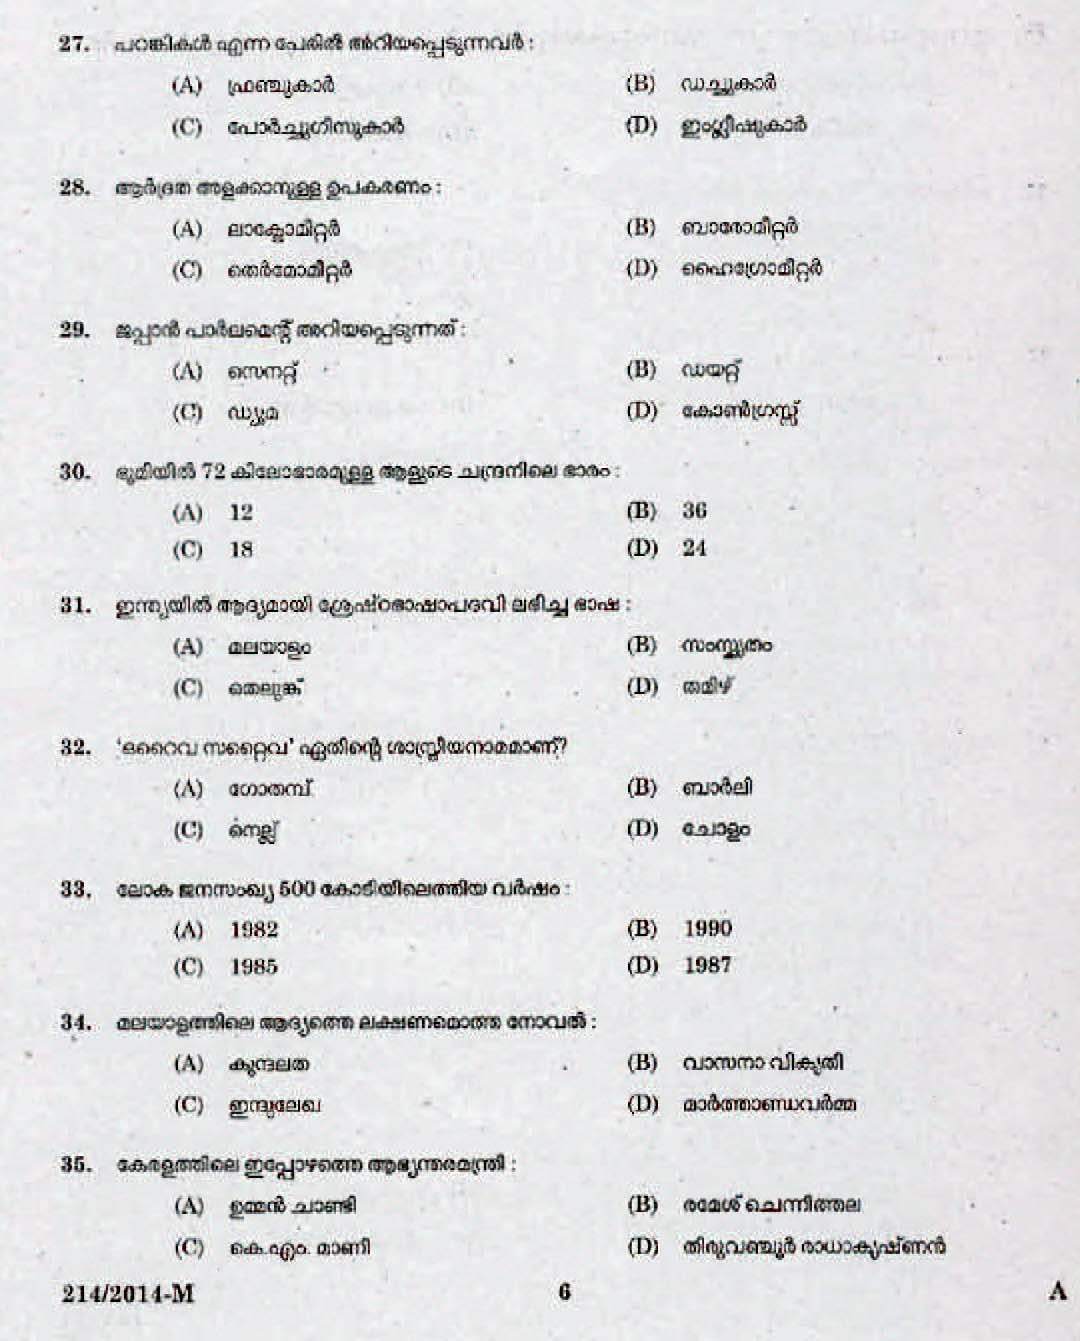 Kerala Last Grade Servants Exam 2014 Question Paper Code 2142014 M 4